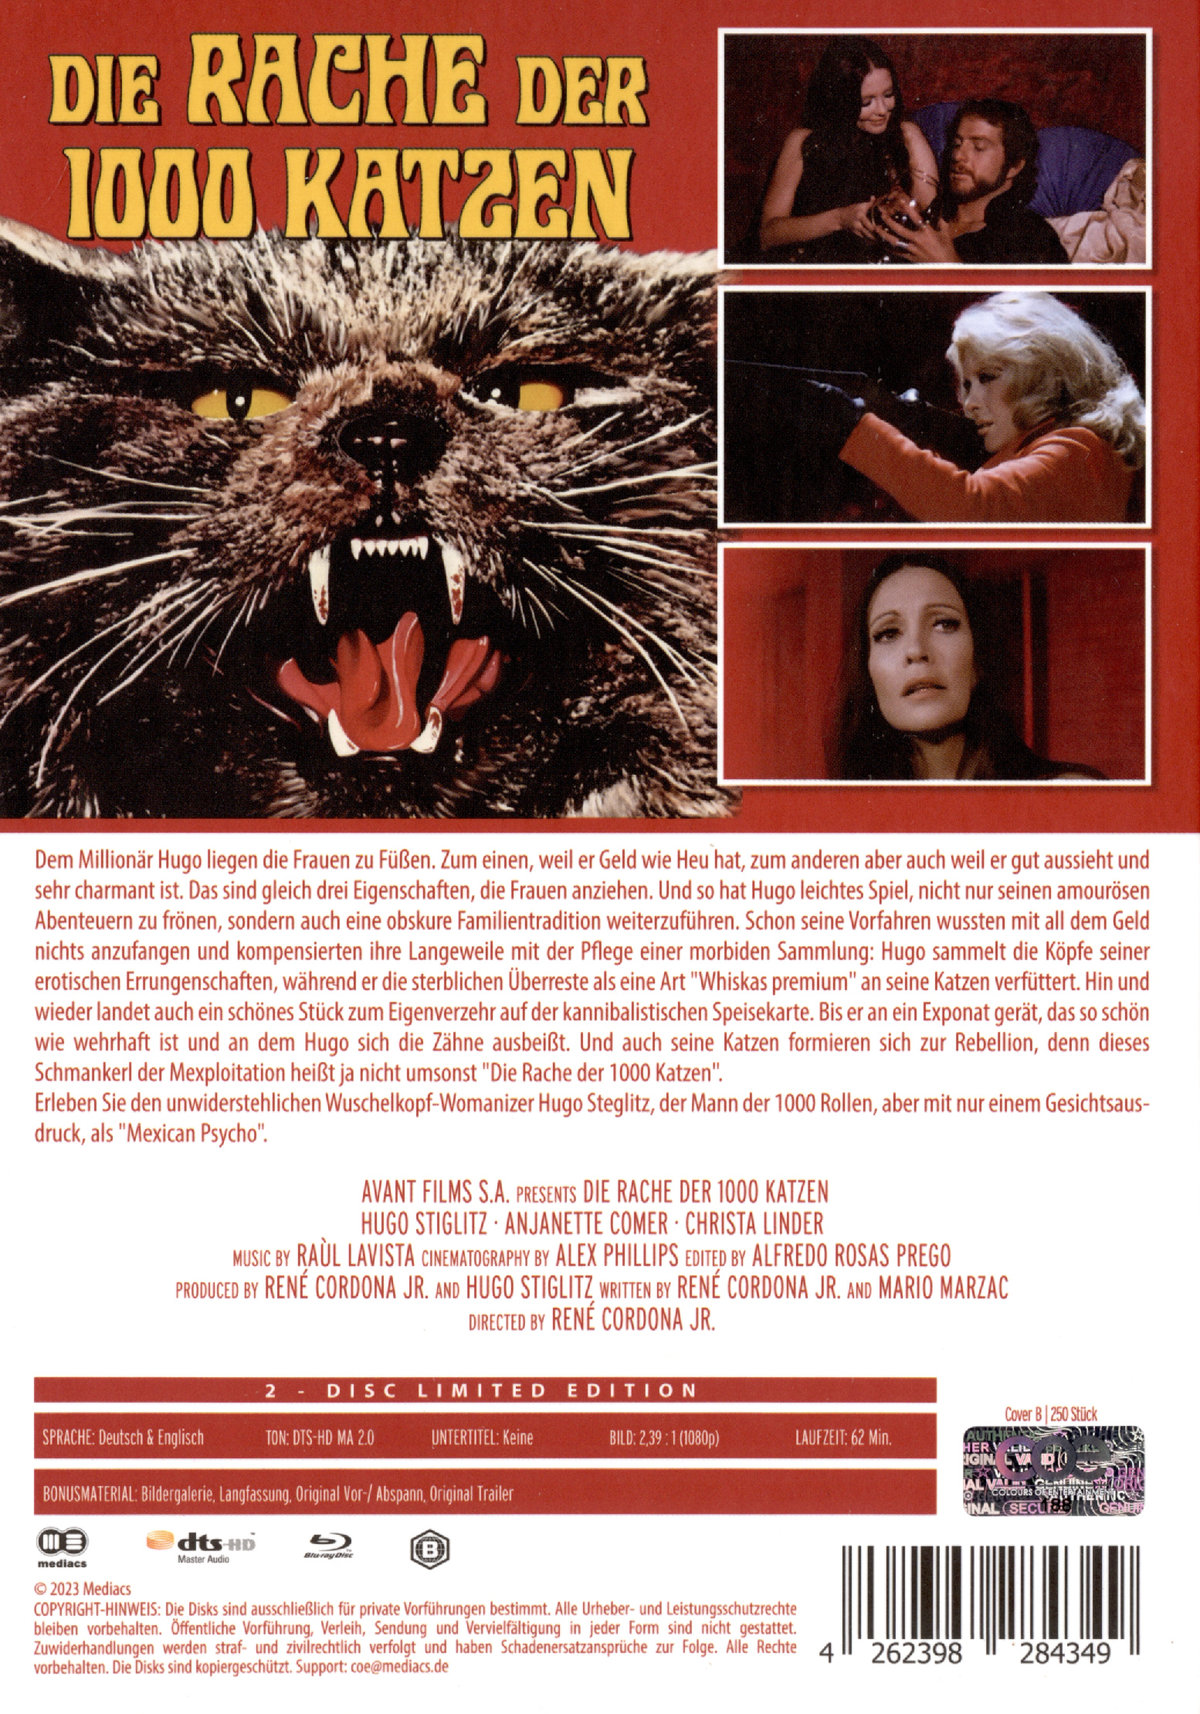 Rache der 1000 Katzen, Die - Uncut Mediabook Edition (DVD+blu-ray) (B) 